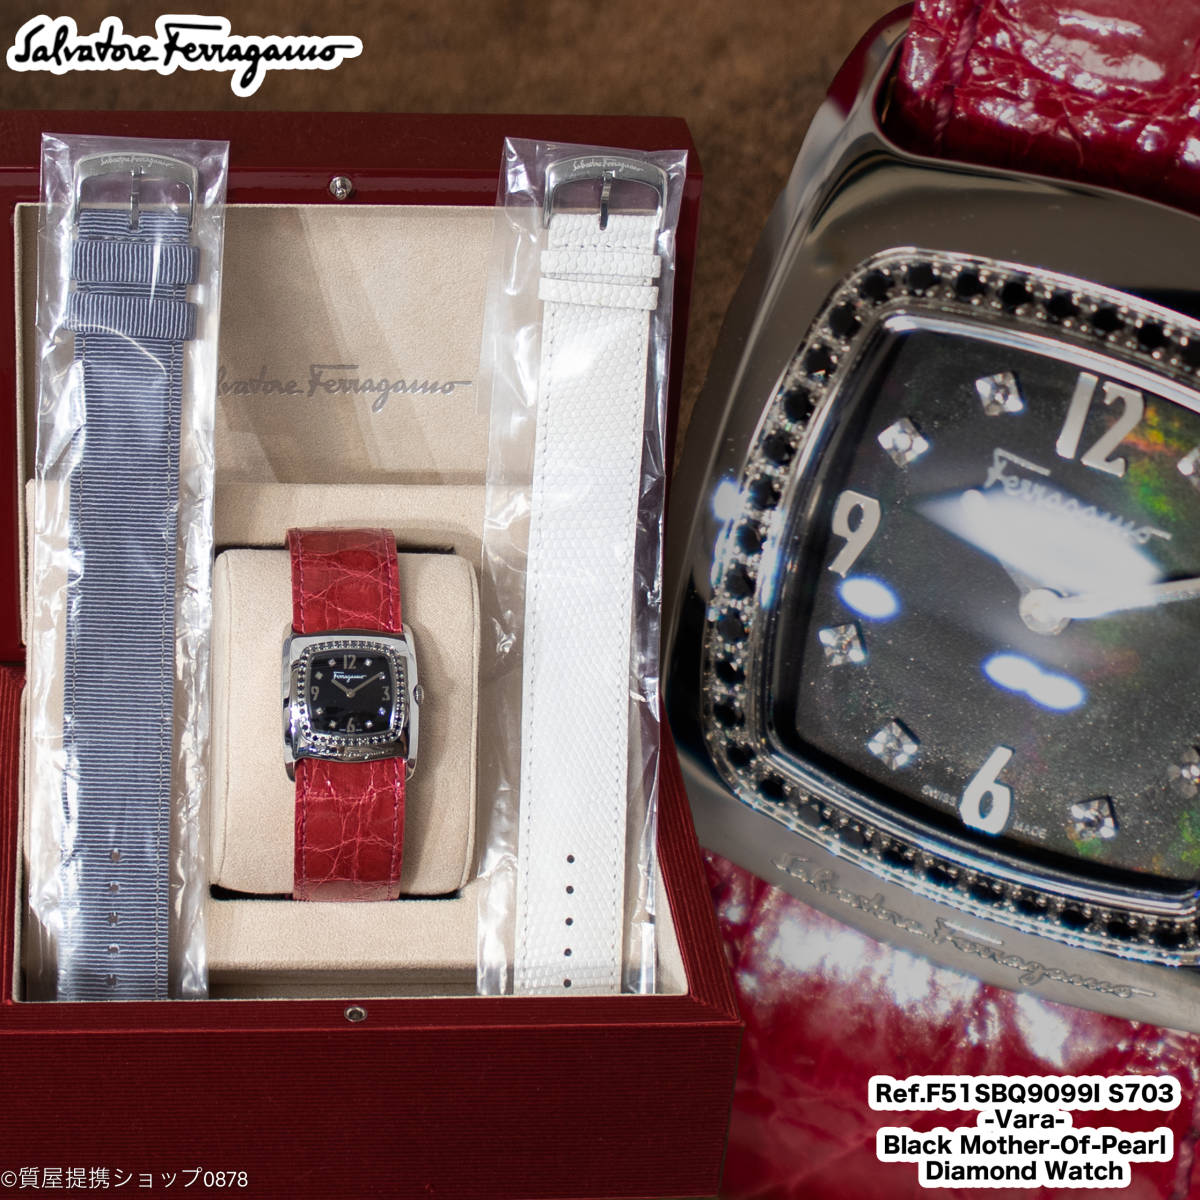 サルヴァトーレ・フェラガモ：ヴァラモチーフクォーツ駆動腕時計／替えバンド付／Ref.F51SBQ9099I S703型／Salvatore Ferragamo Vara Watch